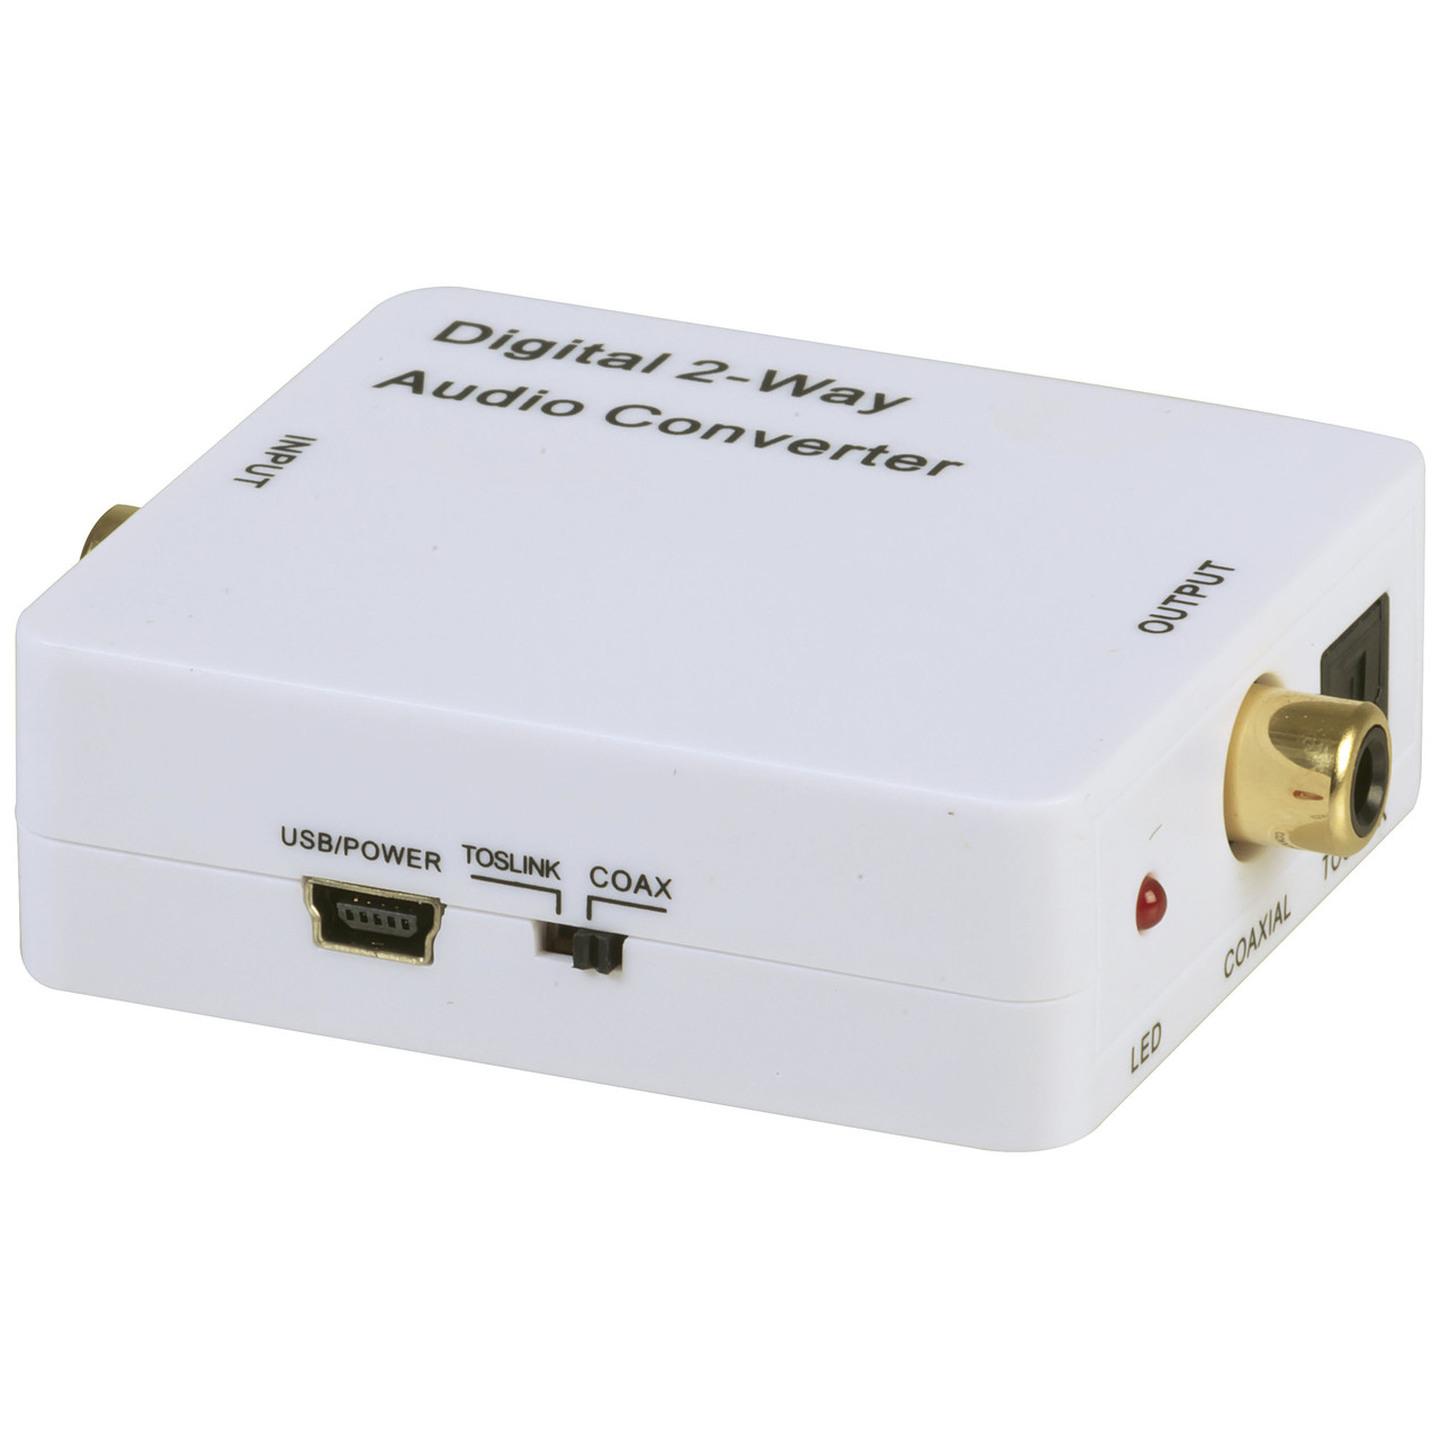 Digital Audio Converter & Repeater